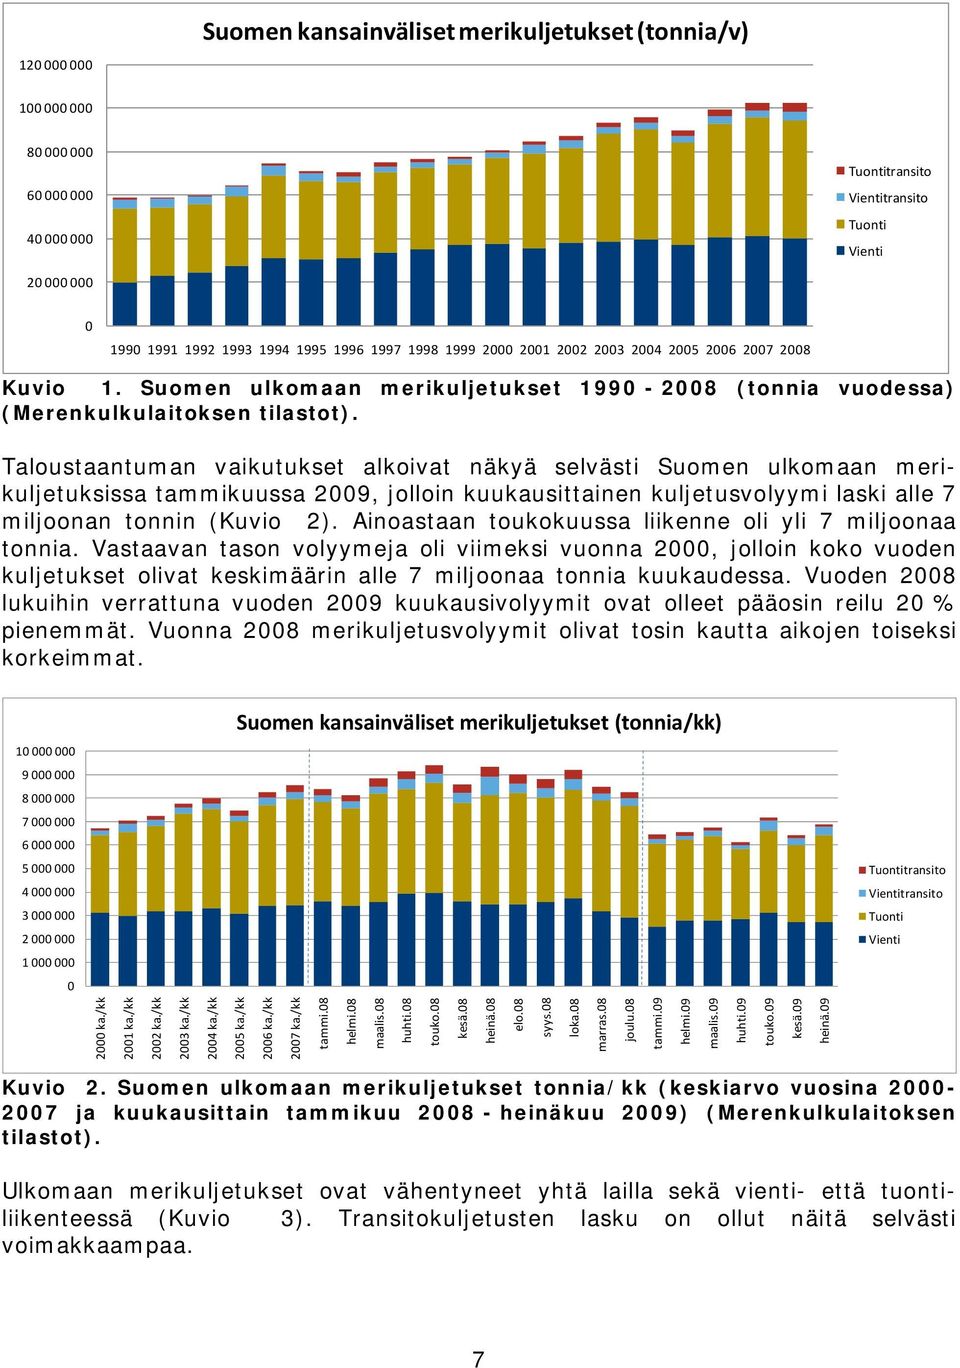 Taloustaantuman vaikutukset alkoivat näkyä selvästi Suomen ulkomaan merikuljetuksissa tammikuussa 2009, jolloin kuukausittainen kuljetusvolyymi laski alle 7 miljoonan tonnin (Kuvio 2).